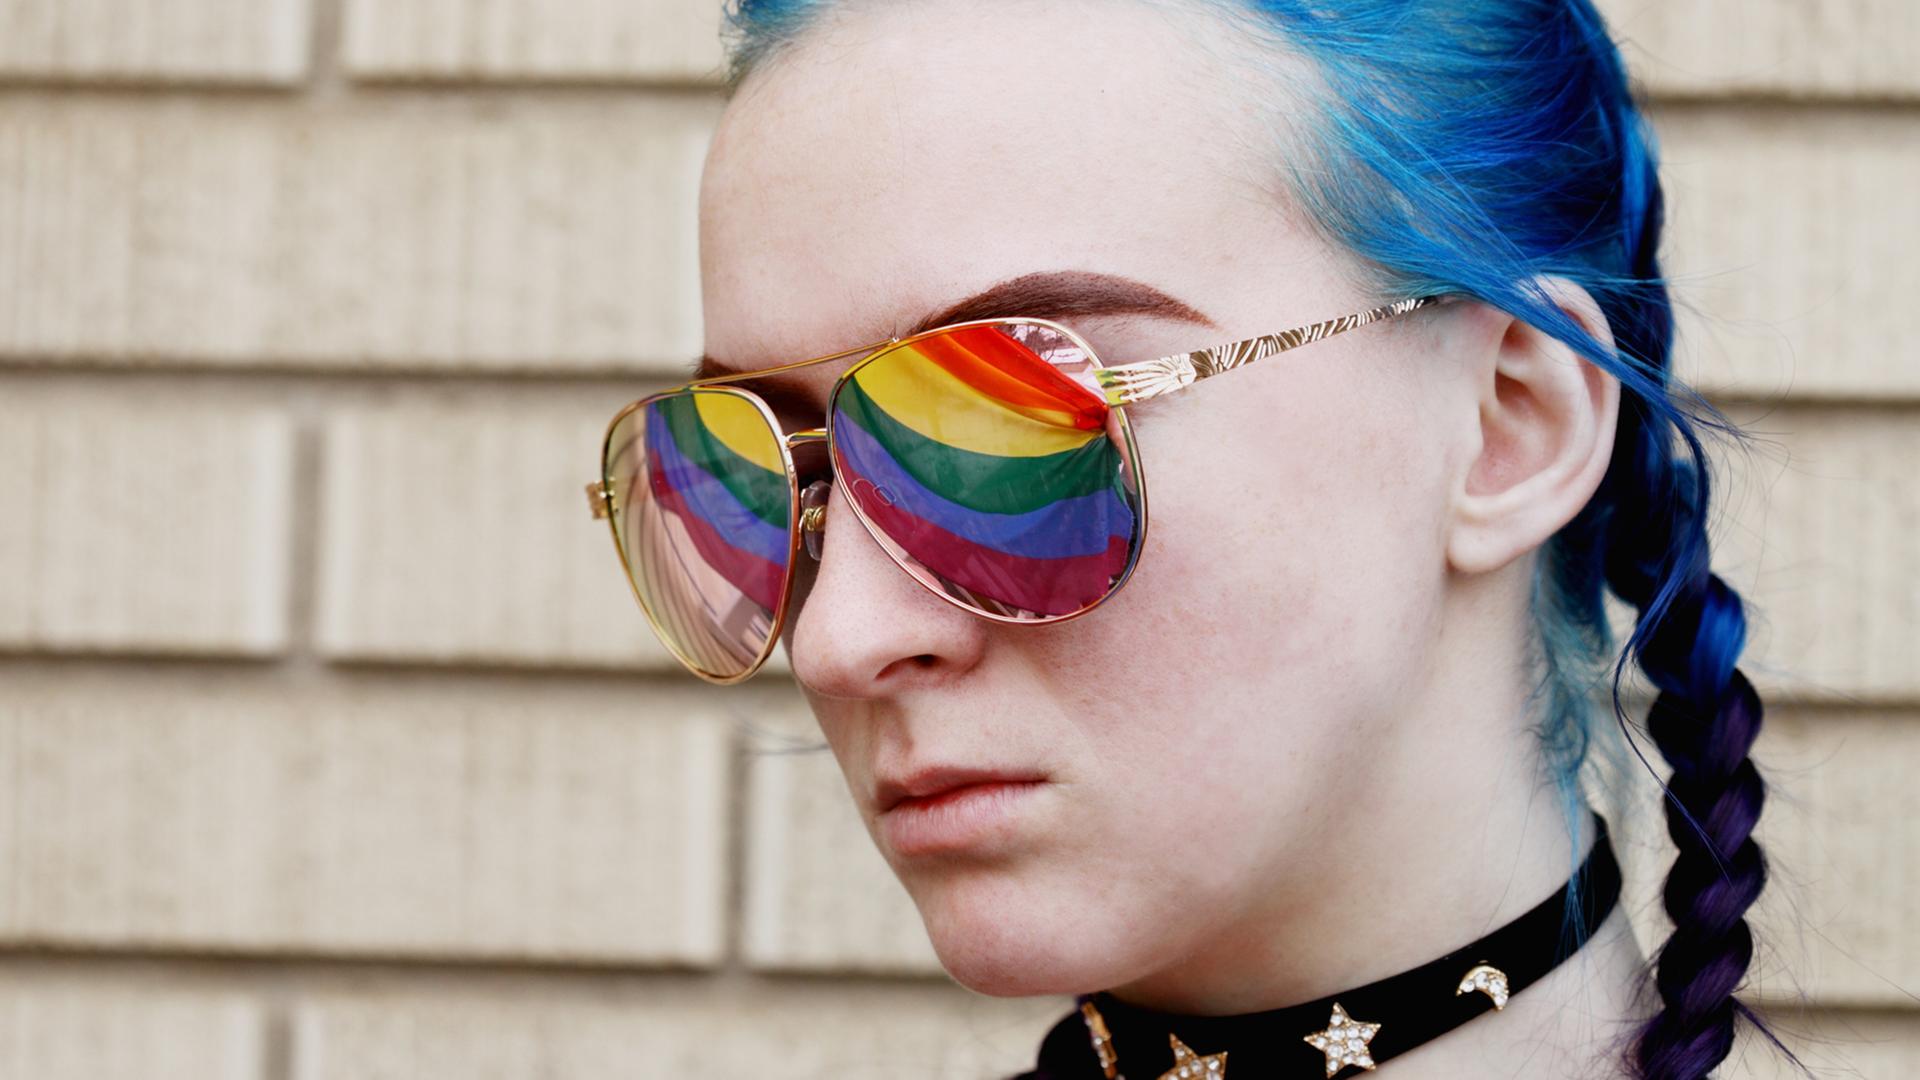 Eine junge Frau mit blau gefärbtem Haar trägt eine Sonnenbrille, in der sich die Regenbogenfahne spiegelt.